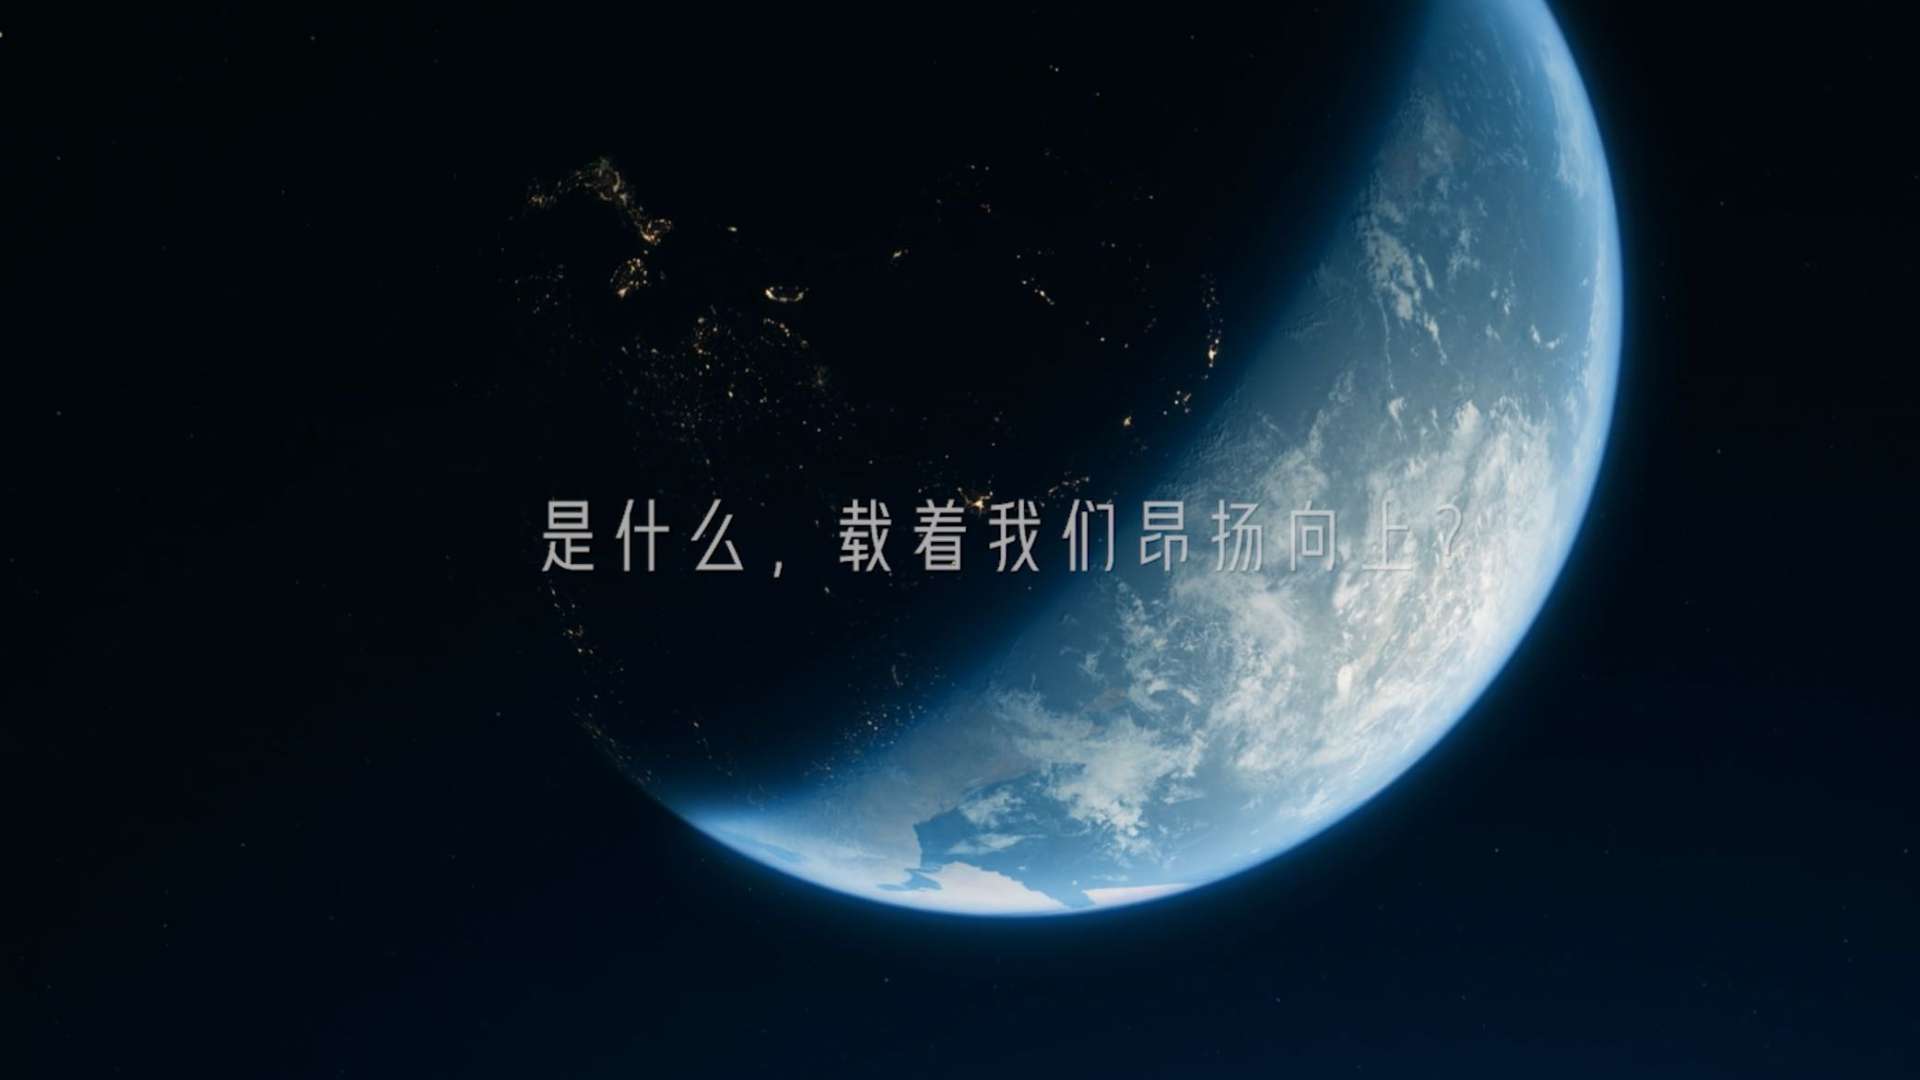 梦之蓝2021致敬中国航天 大国梦想 有你担当